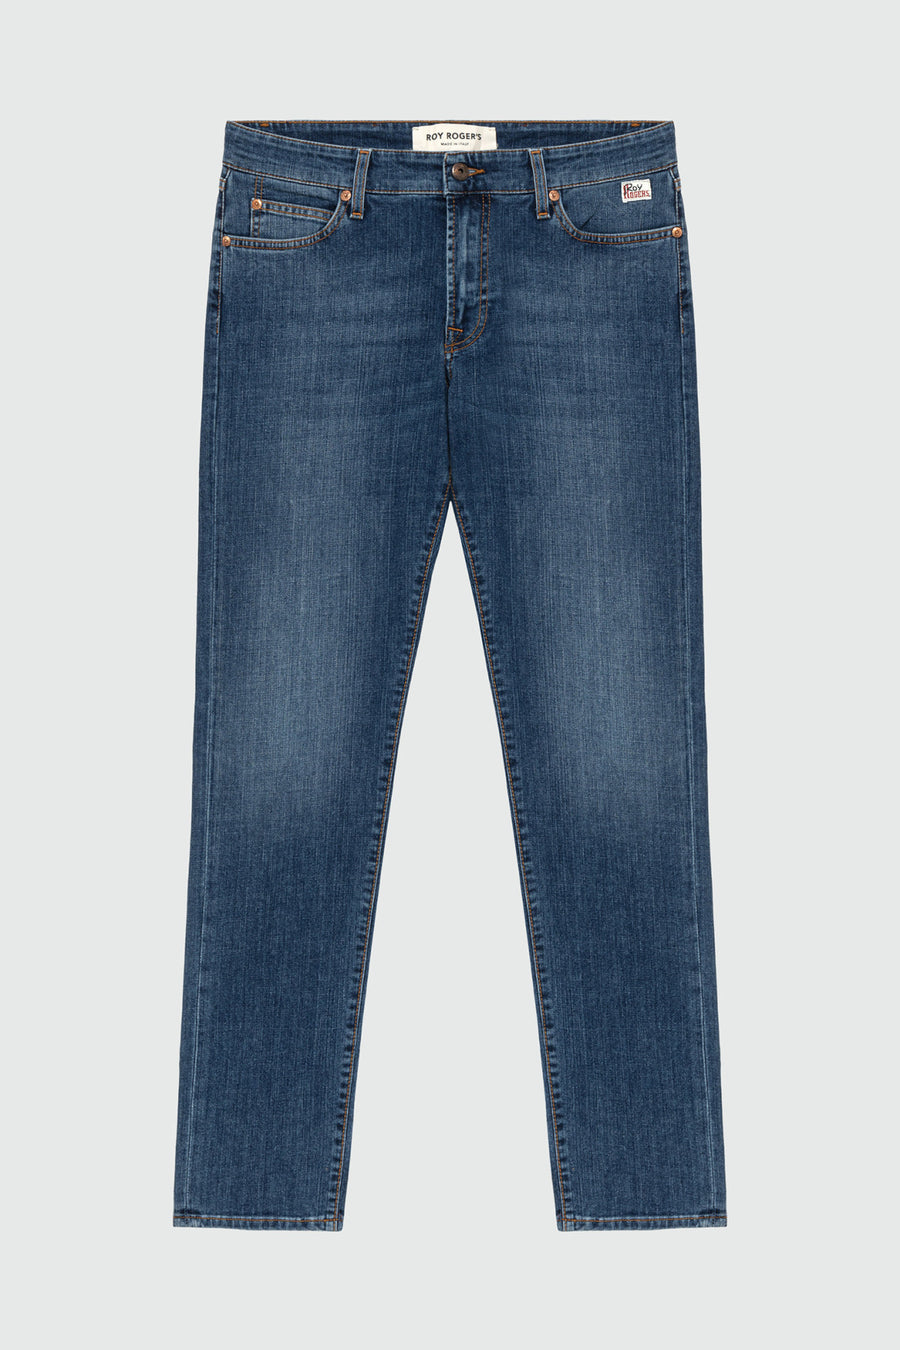 US4-517 Jeans Weared 10 Man